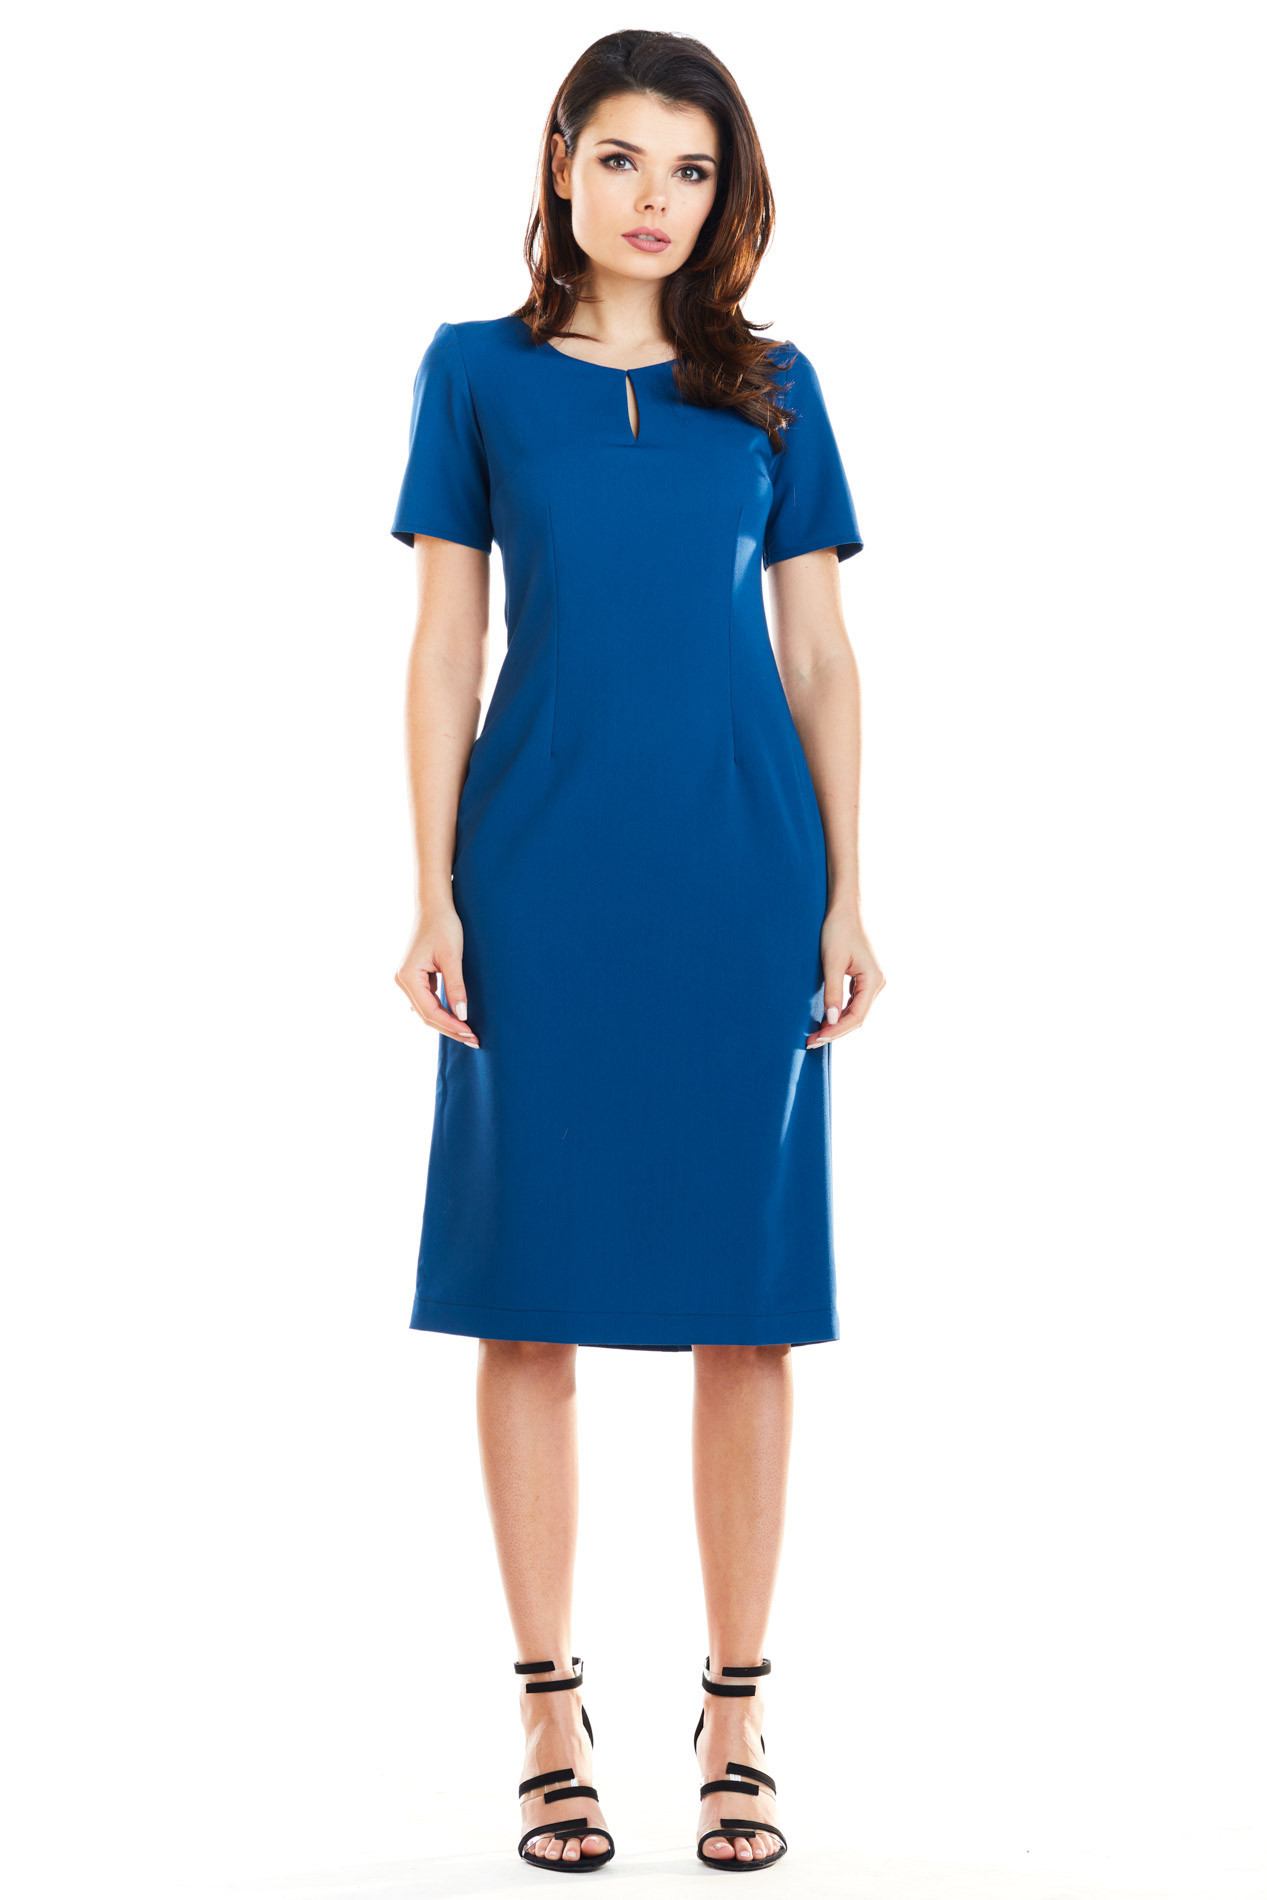 Dámské šaty A252 - Awama M tm.Modrá